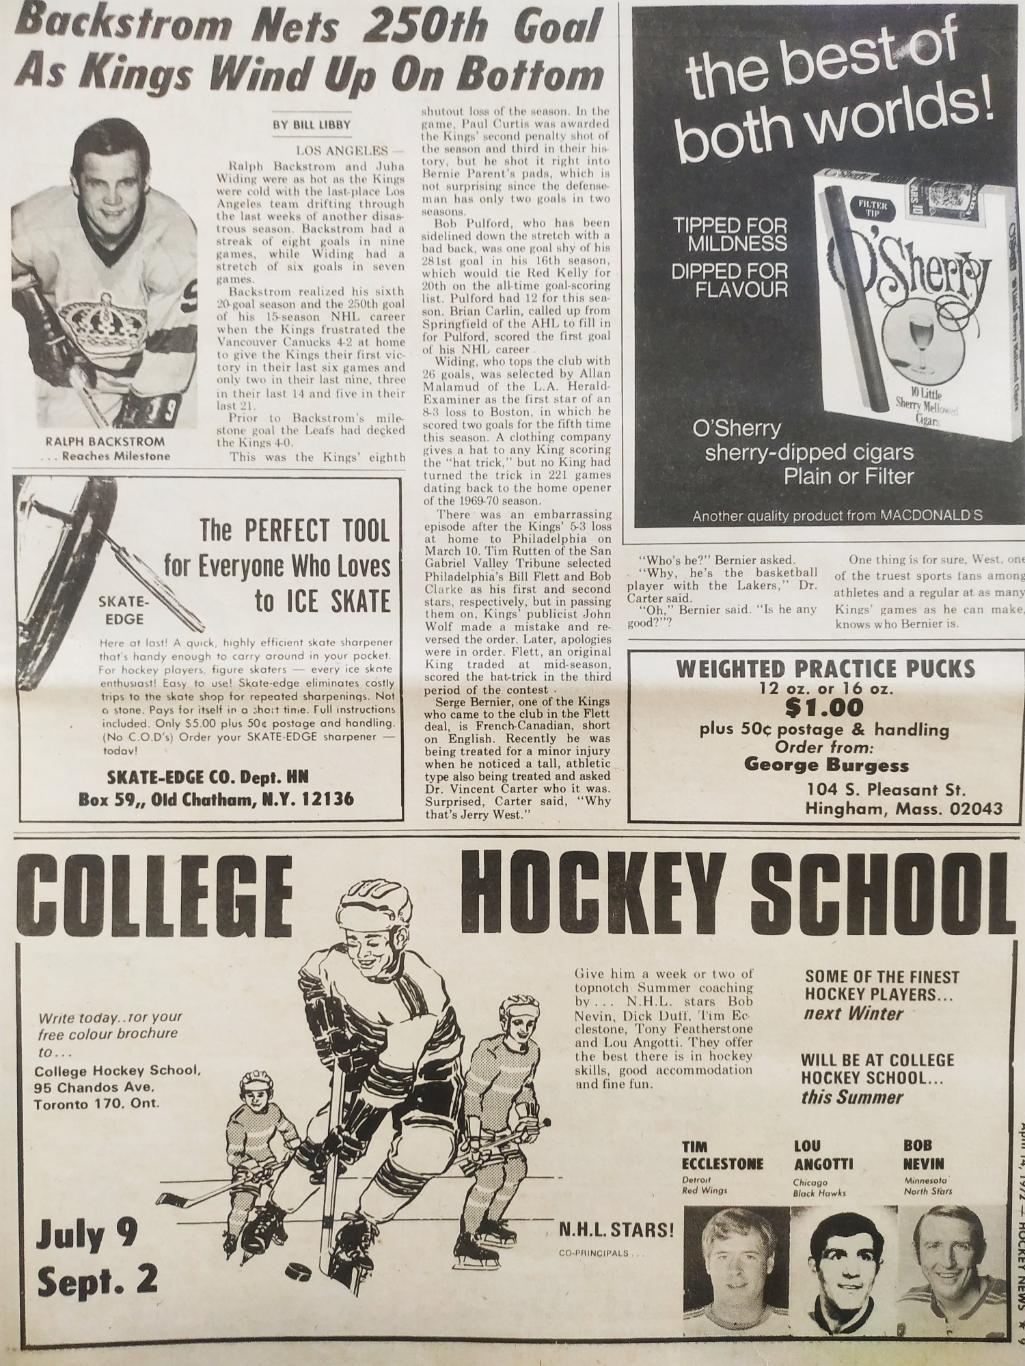 ХОККЕЙ ЖУРНАЛ ЕЖЕНЕДЕЛЬНИК НХЛ НОВОСТИ ХОККЕЯ APR.14 1972 NHL THE HOCKEY NEWS 3